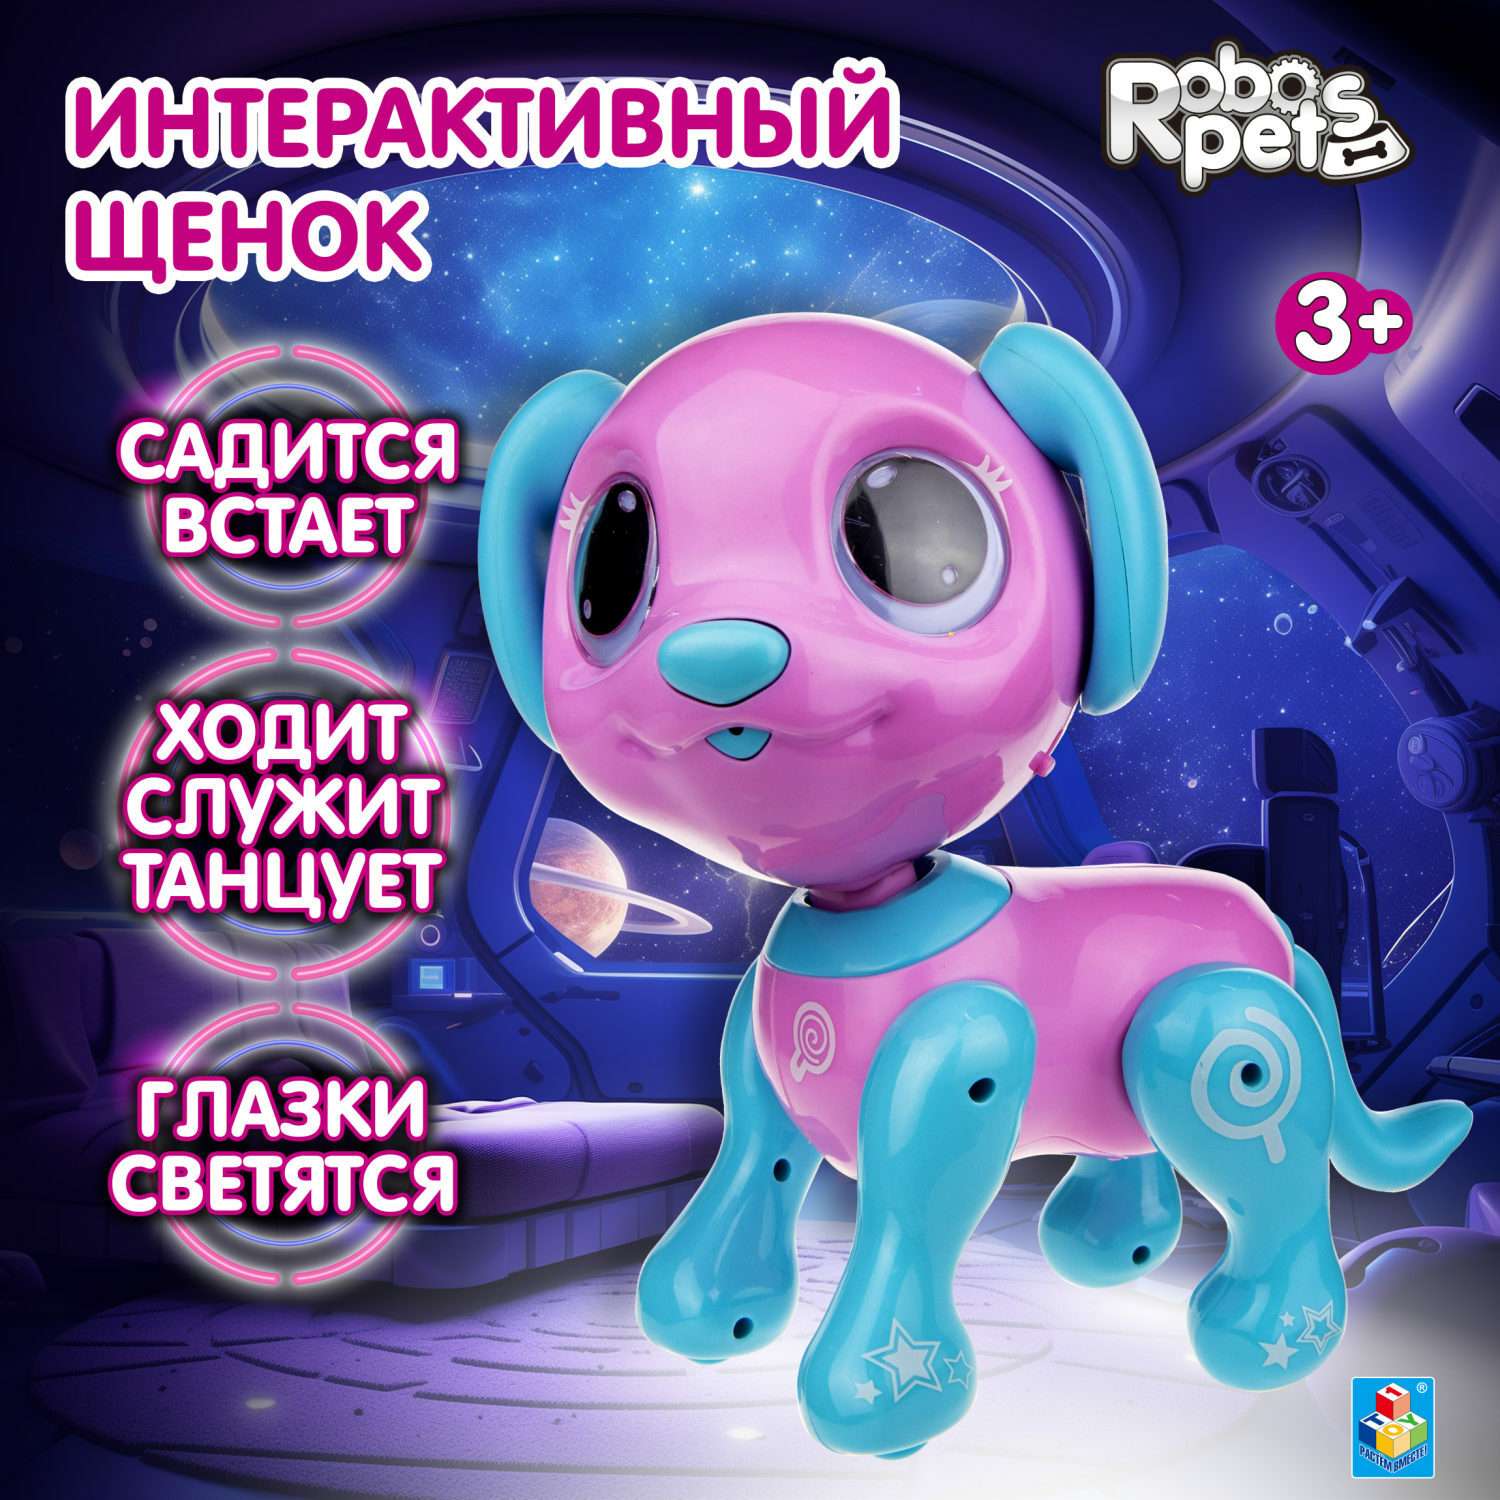 Интерактивная игрушка Robo Pets Робо- пёс розовый - фото 1